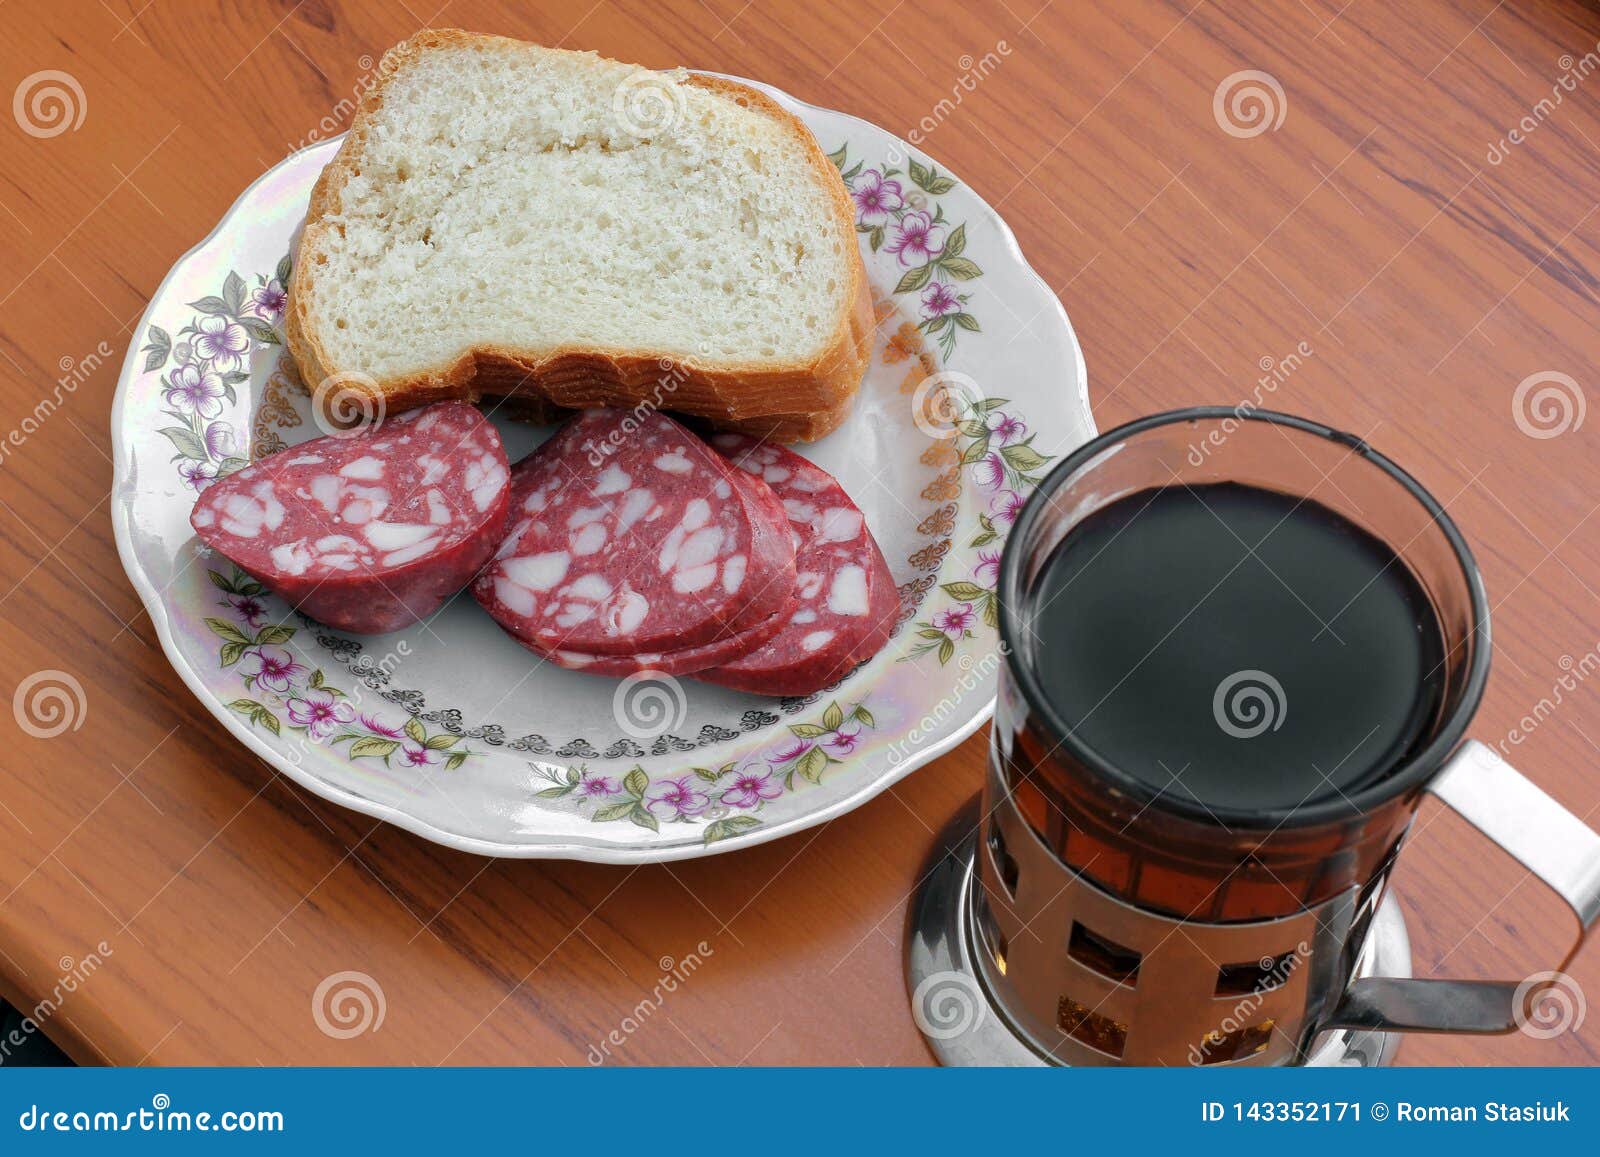 Чай сахар колбаса сыр хлеб. Бутерброд с колбасой и кофе. Завтрак бутерброды и чай. Чай с бутербродом. Чай с хлебом и колбасой.